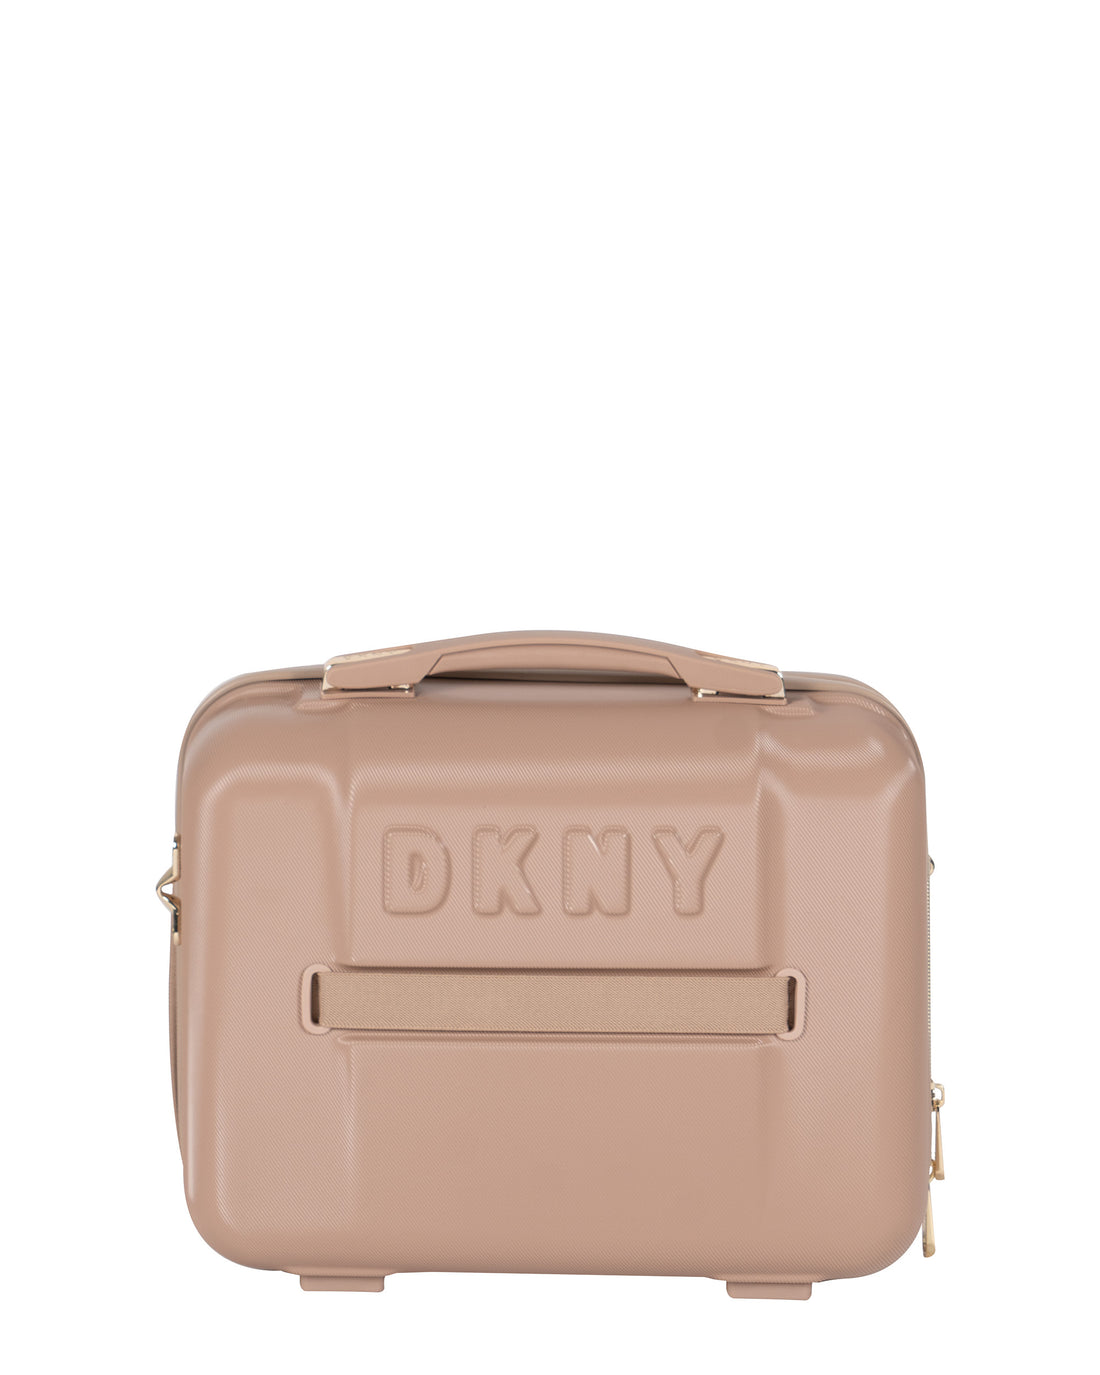 DKNY Beige Beauty Case